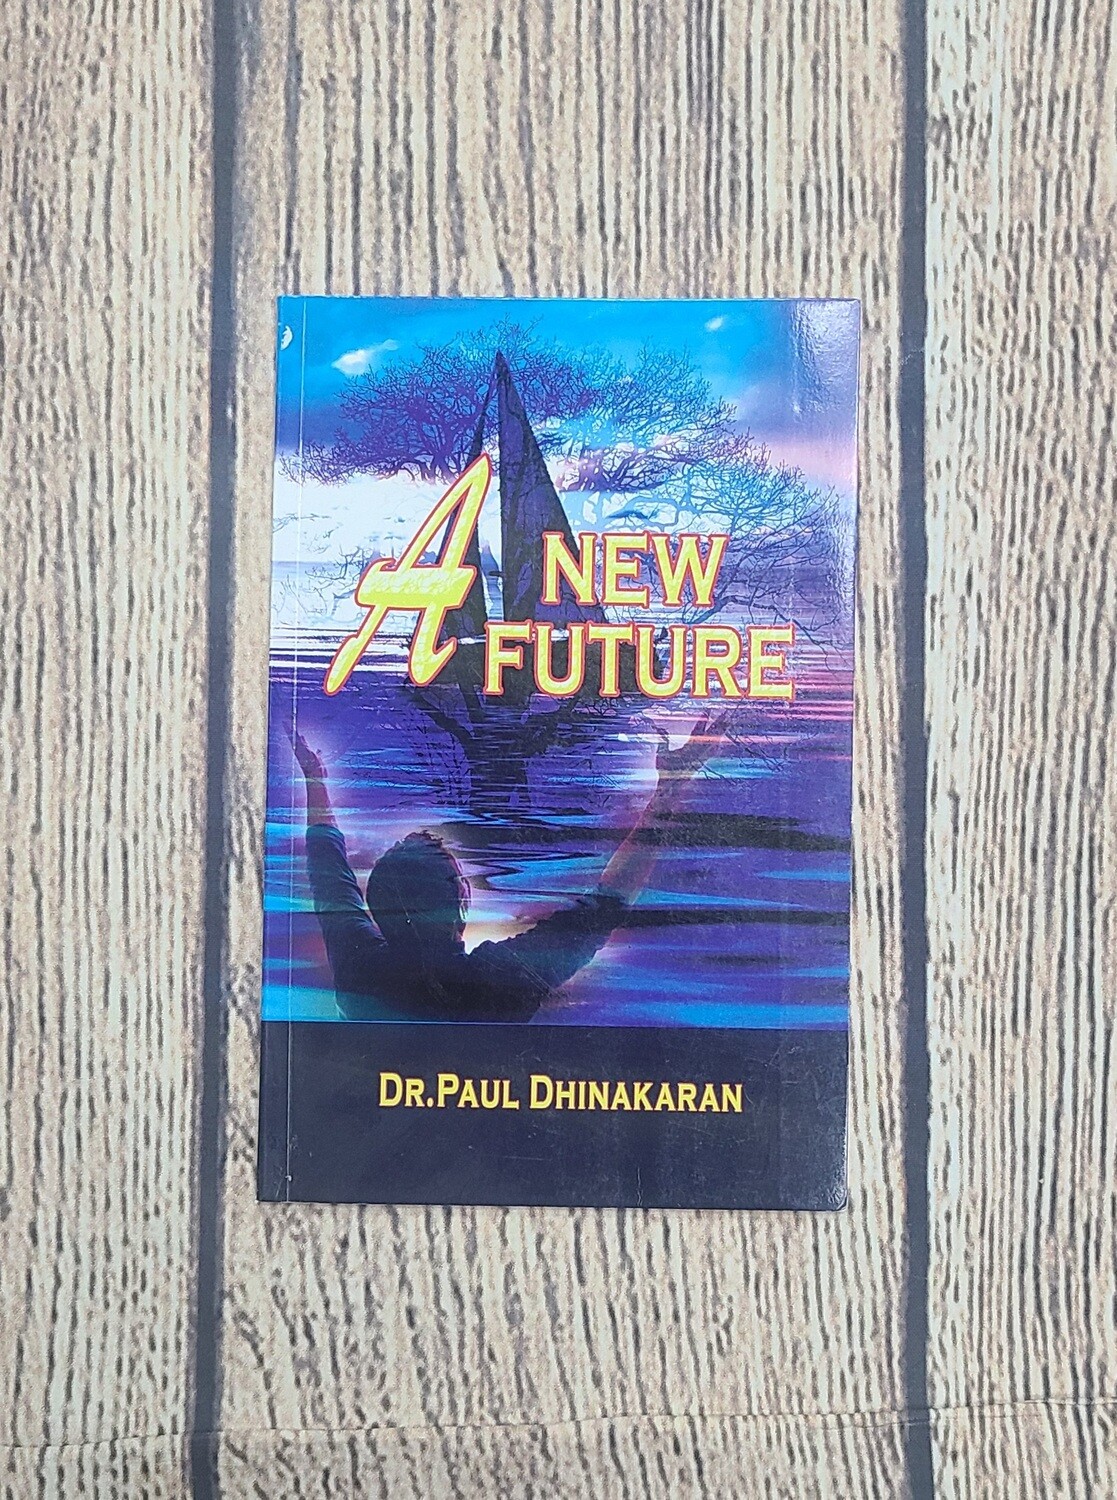 A New Future by Dr. Paul Dhinakaran